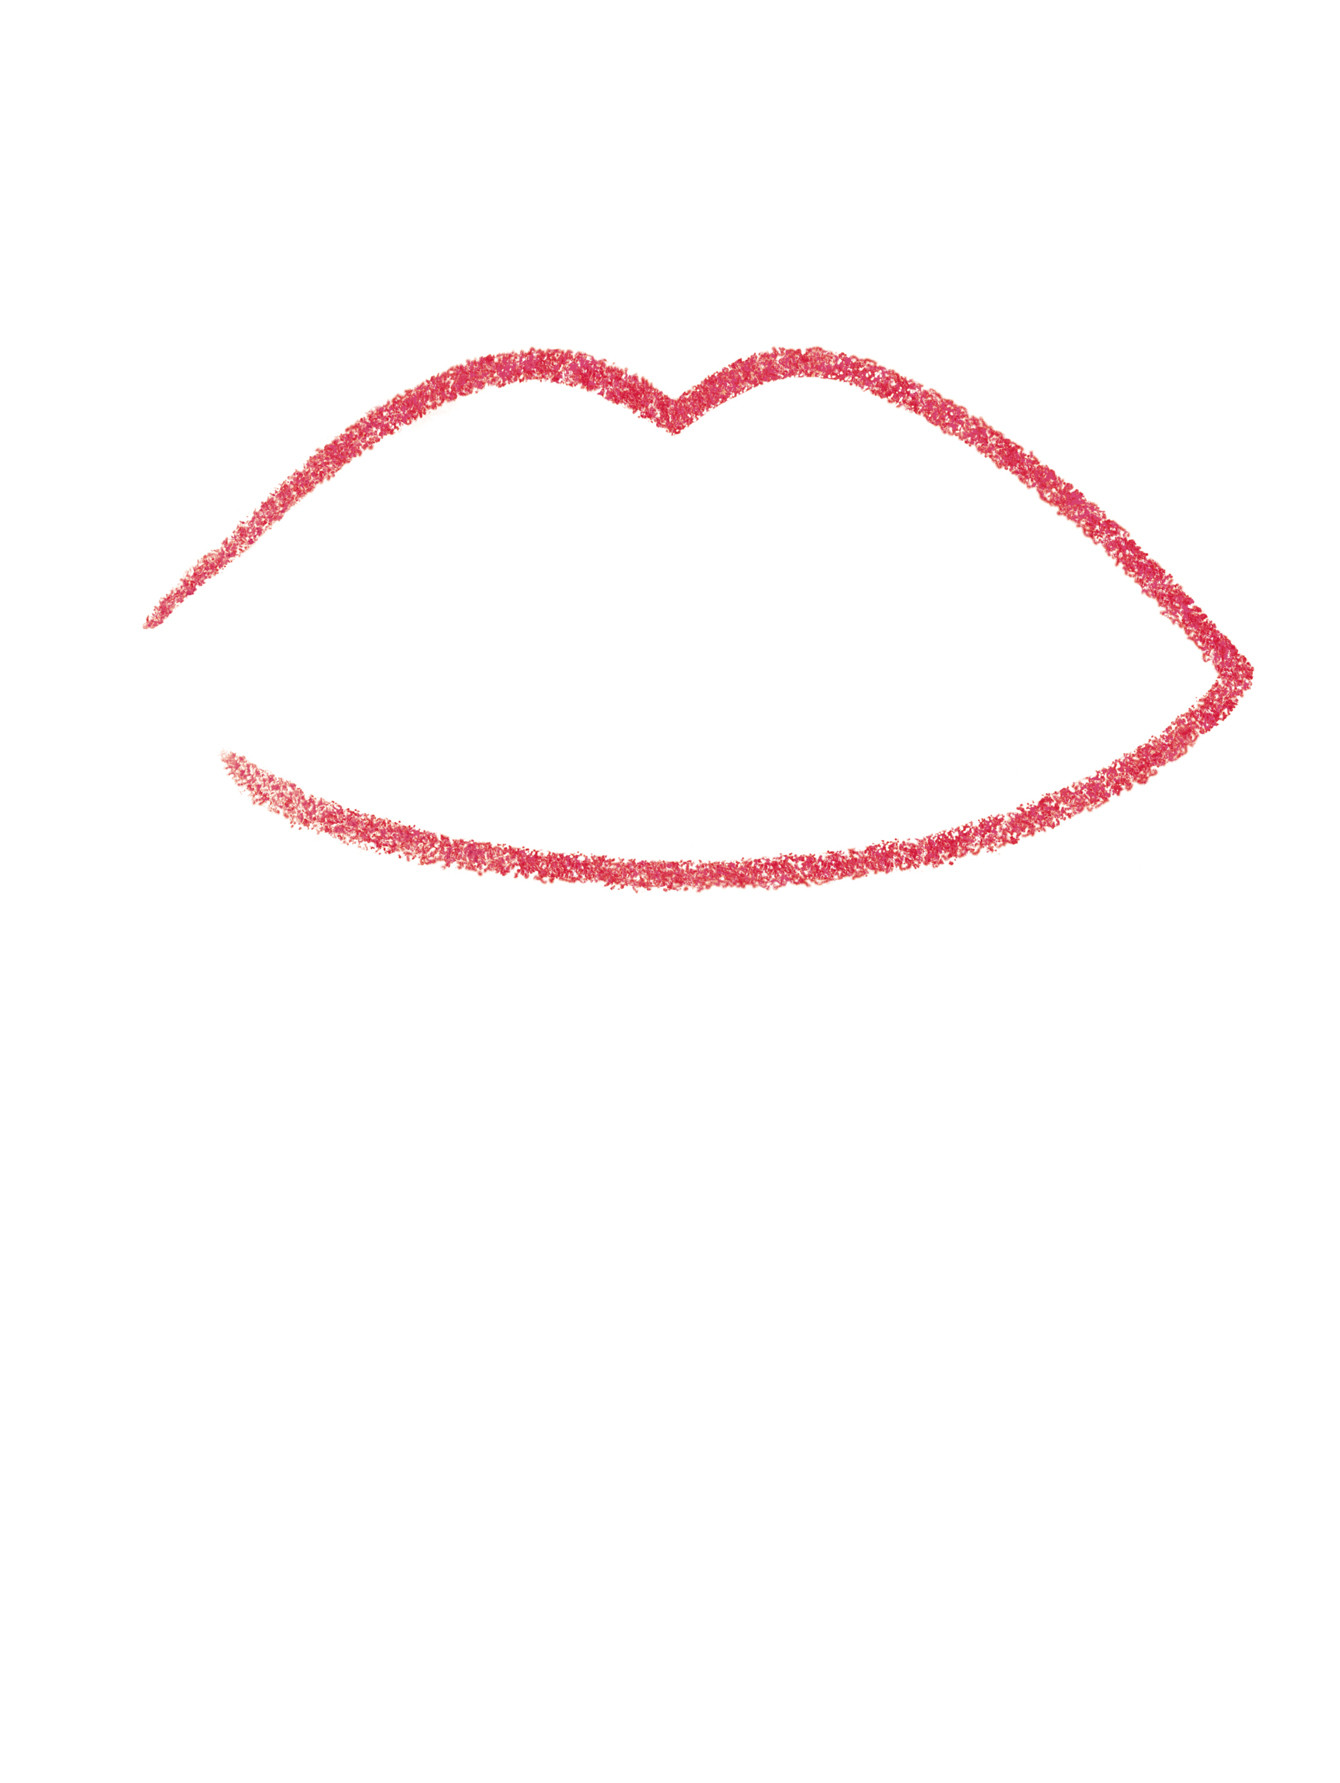 Водостойкий карандаш для контура губ с точилкой Lip Liner, 3 розовая тафта, 1,1 г - Обтравка1